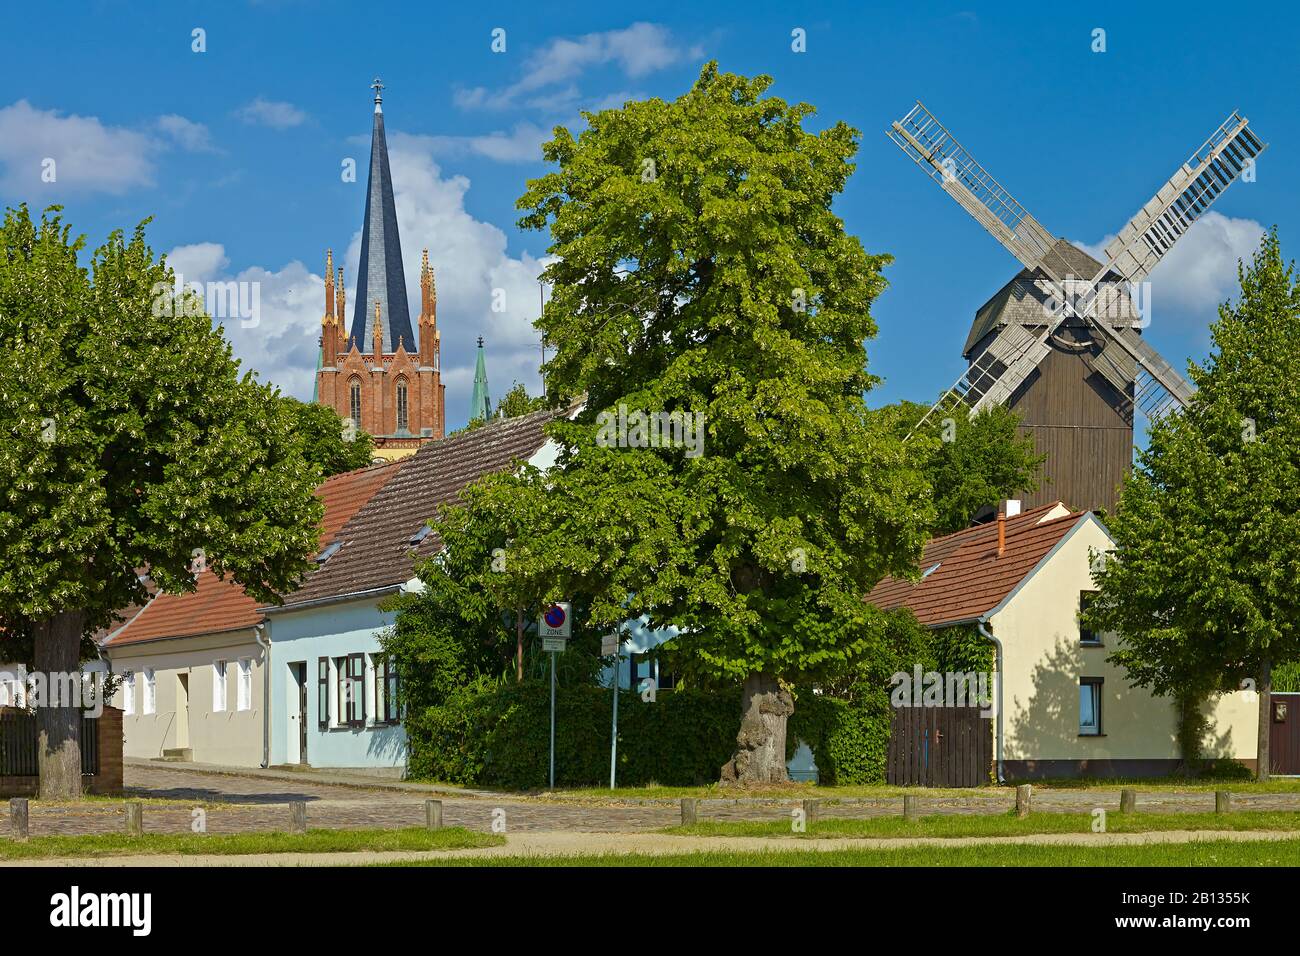 Historisches Zentrum mit Windmühle und Heilig-Geist-Kirche in Werder, Brandenburg, Deutschland Stockfoto